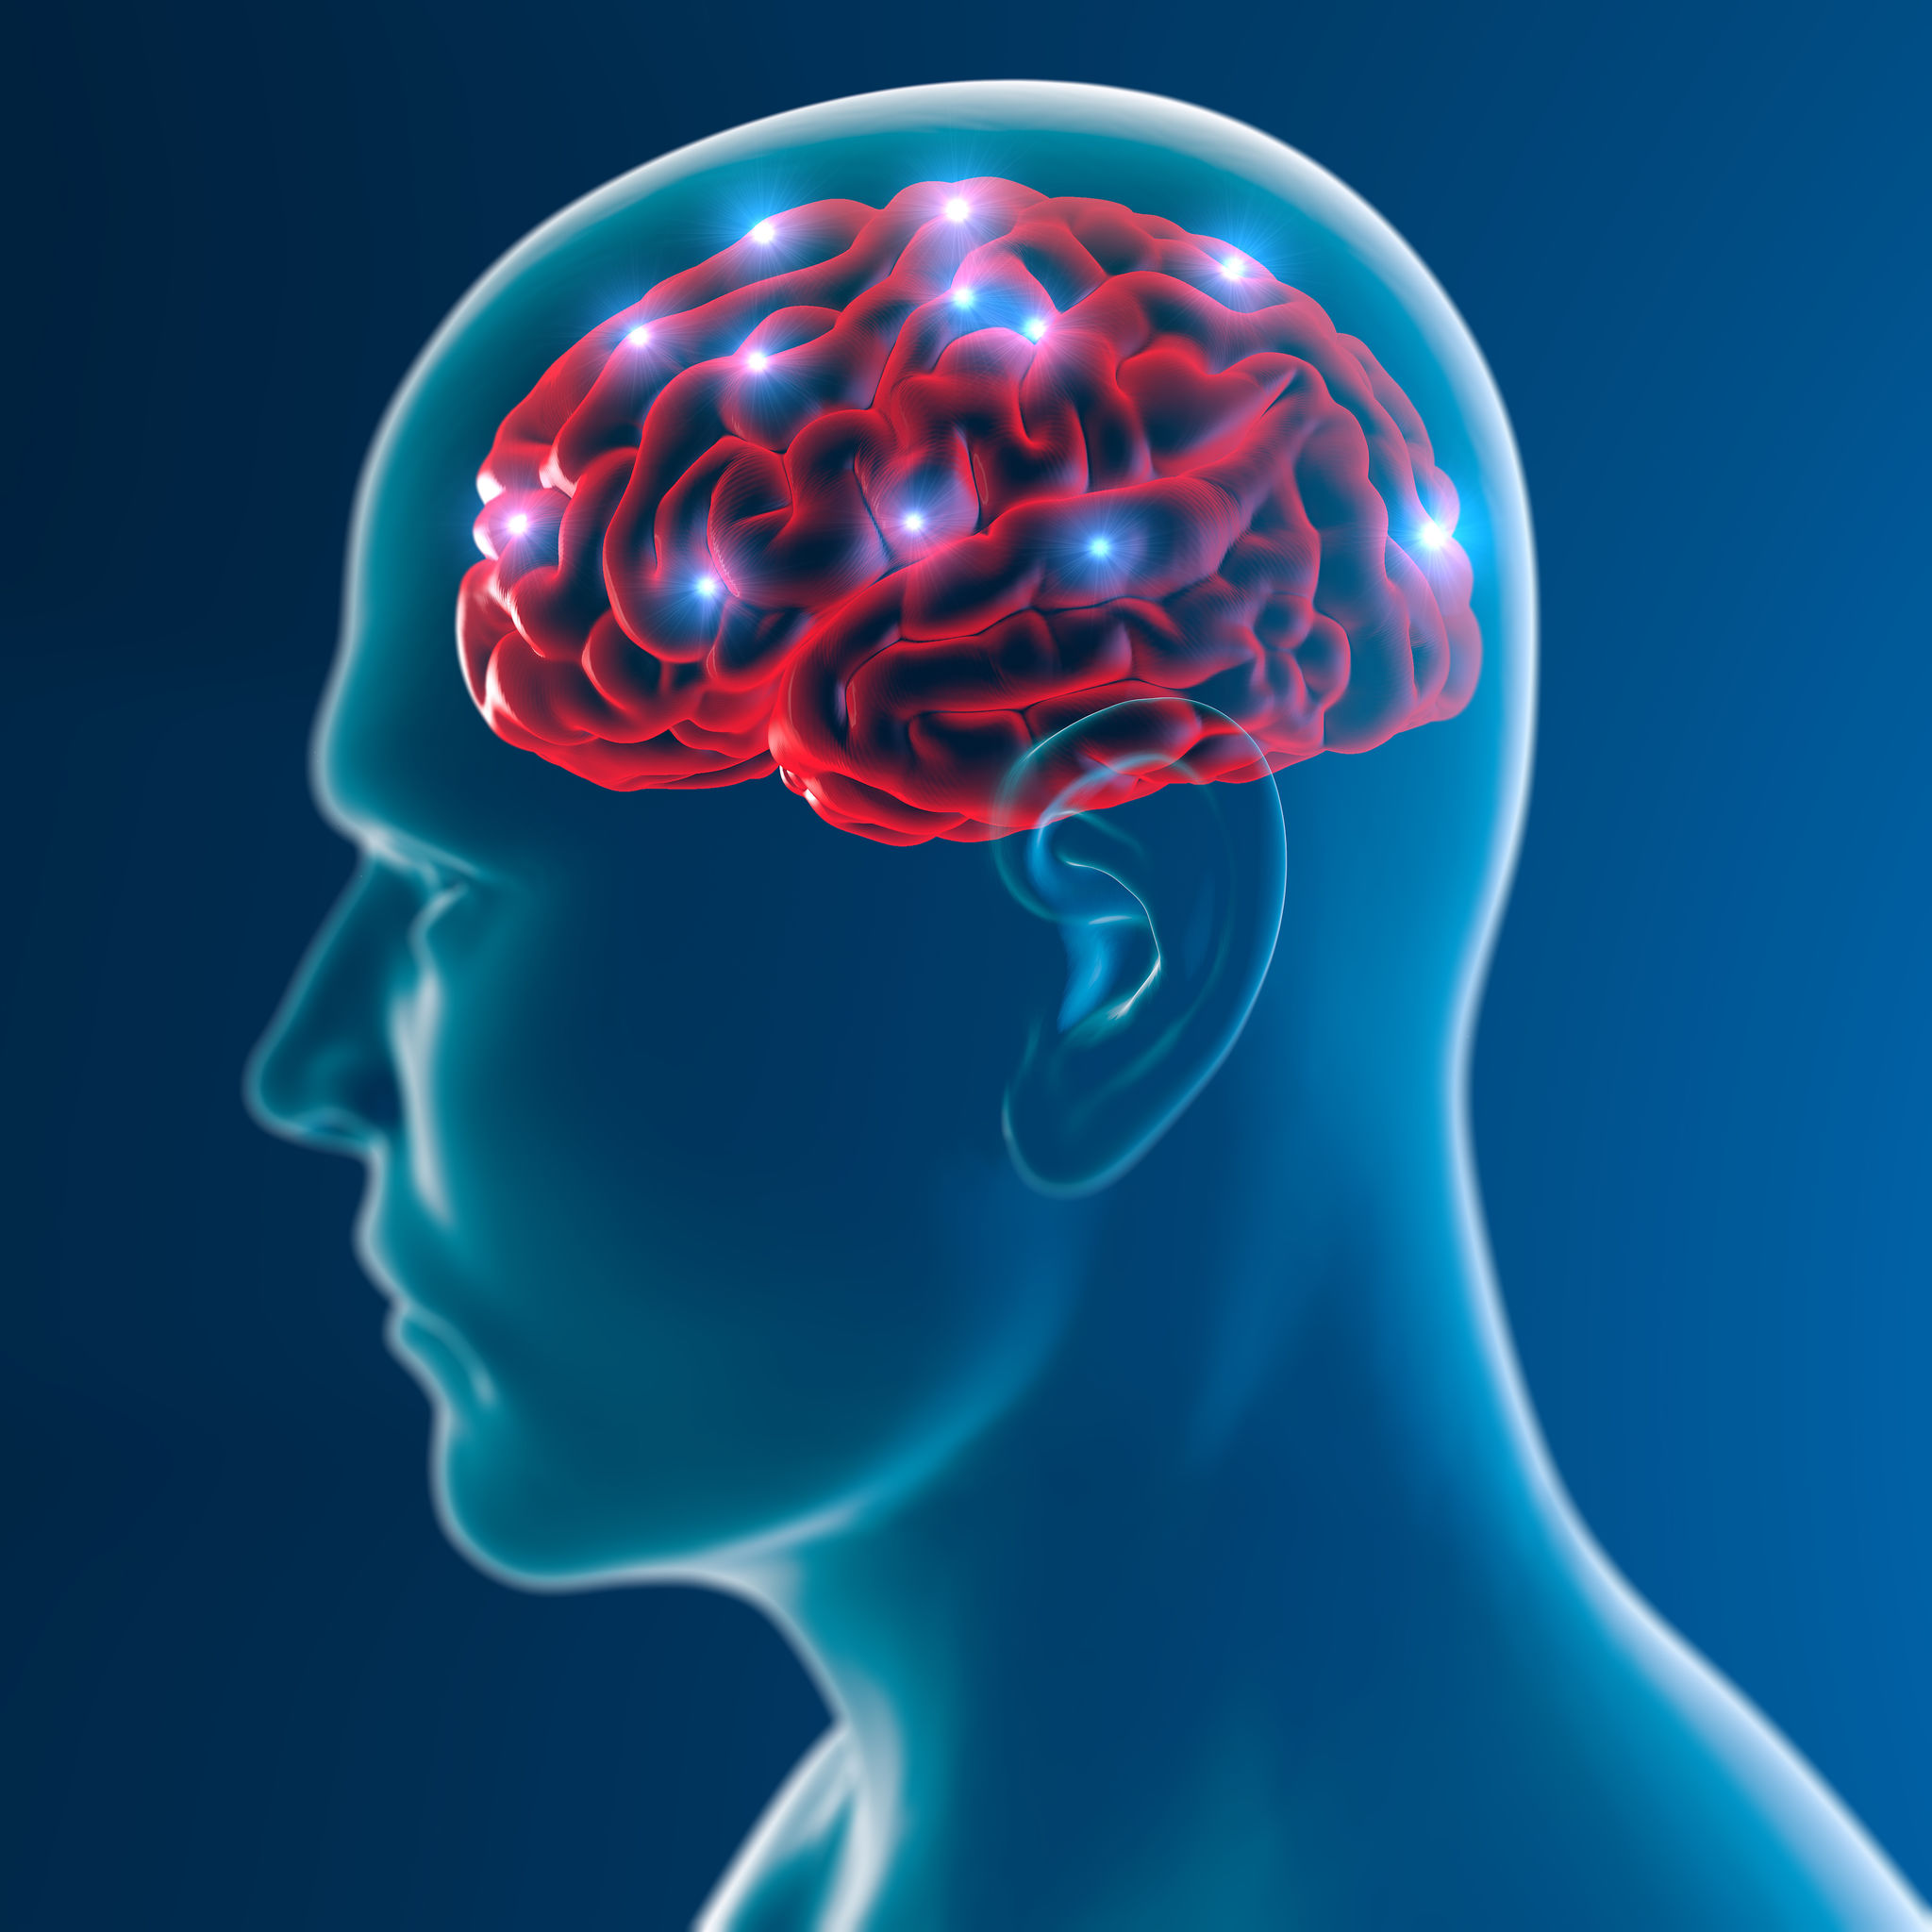 海馬體是大腦學習和記憶系統的核心，運動時身體會為腦袋供應血液